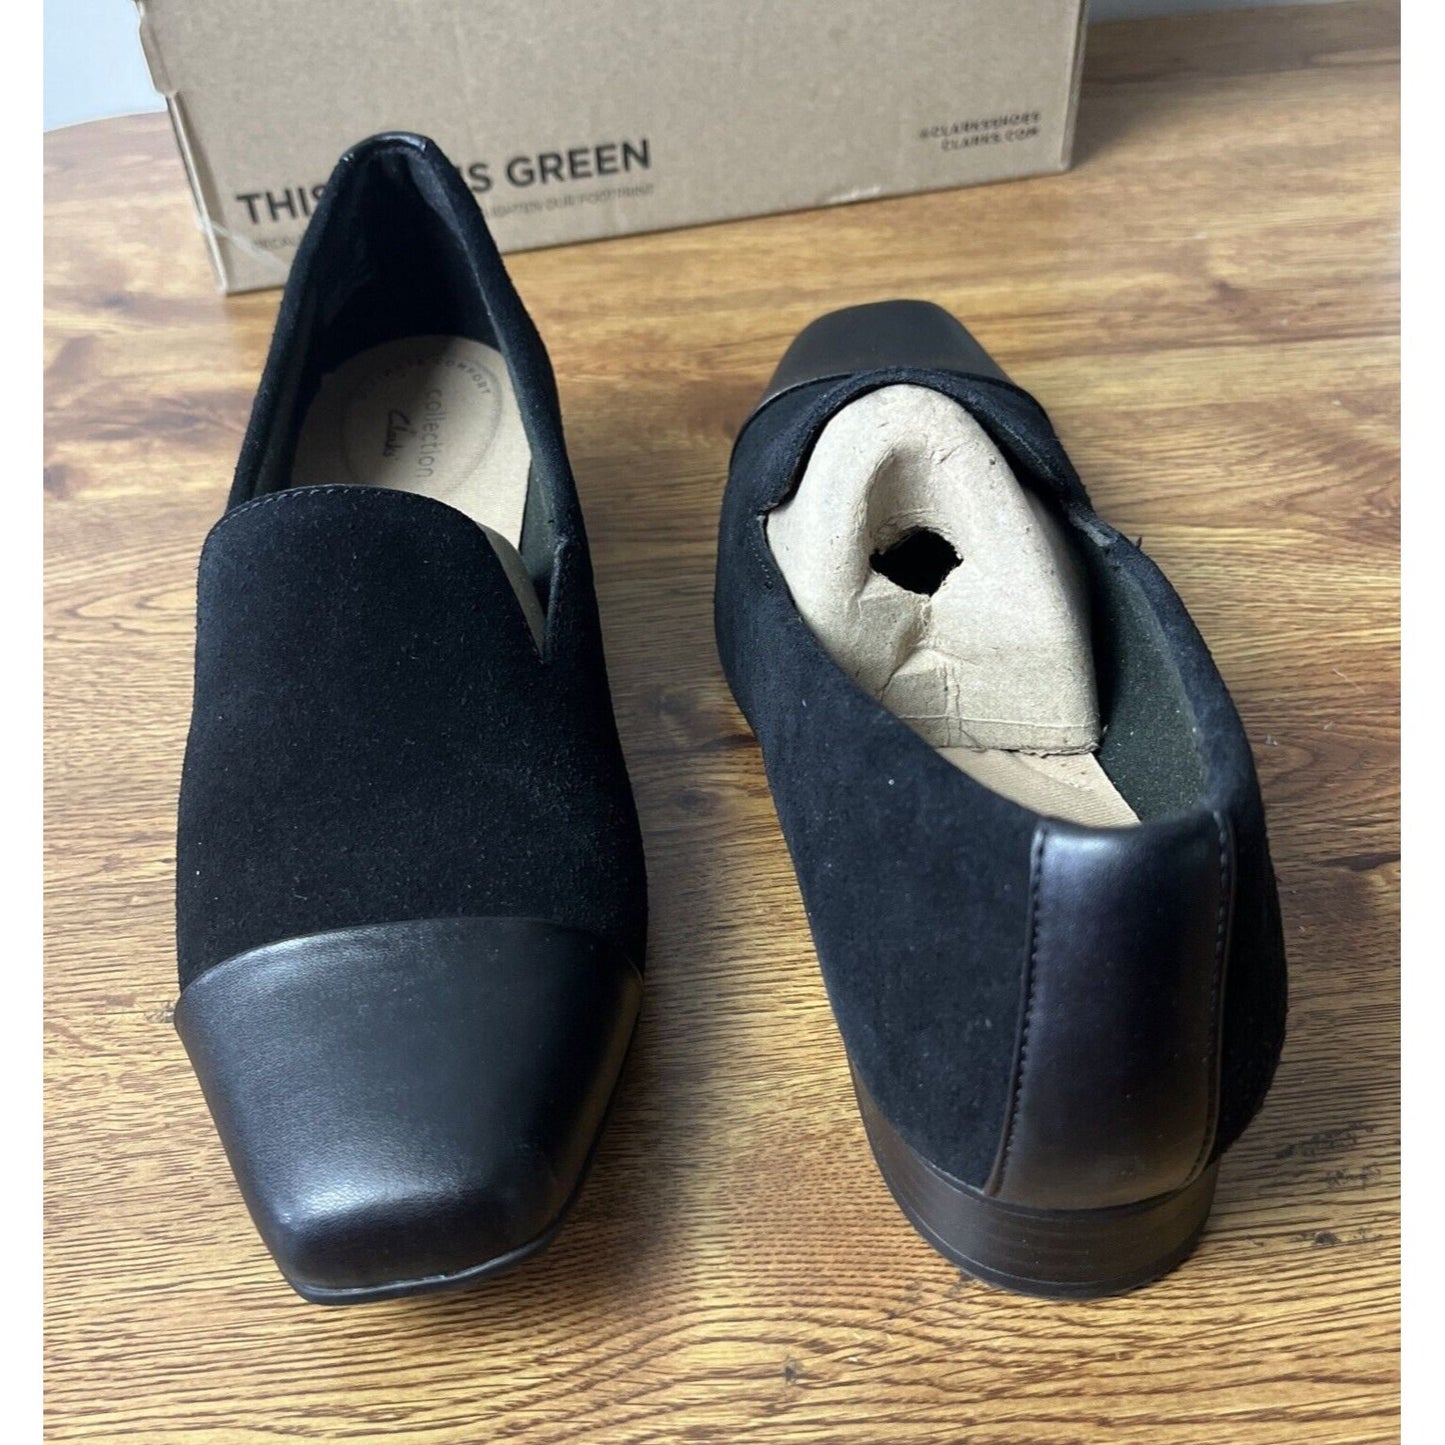 Clarks Tilmont Step Women's Sz 9 M Suede Cap-Toe Loafers Black Shoes A519302